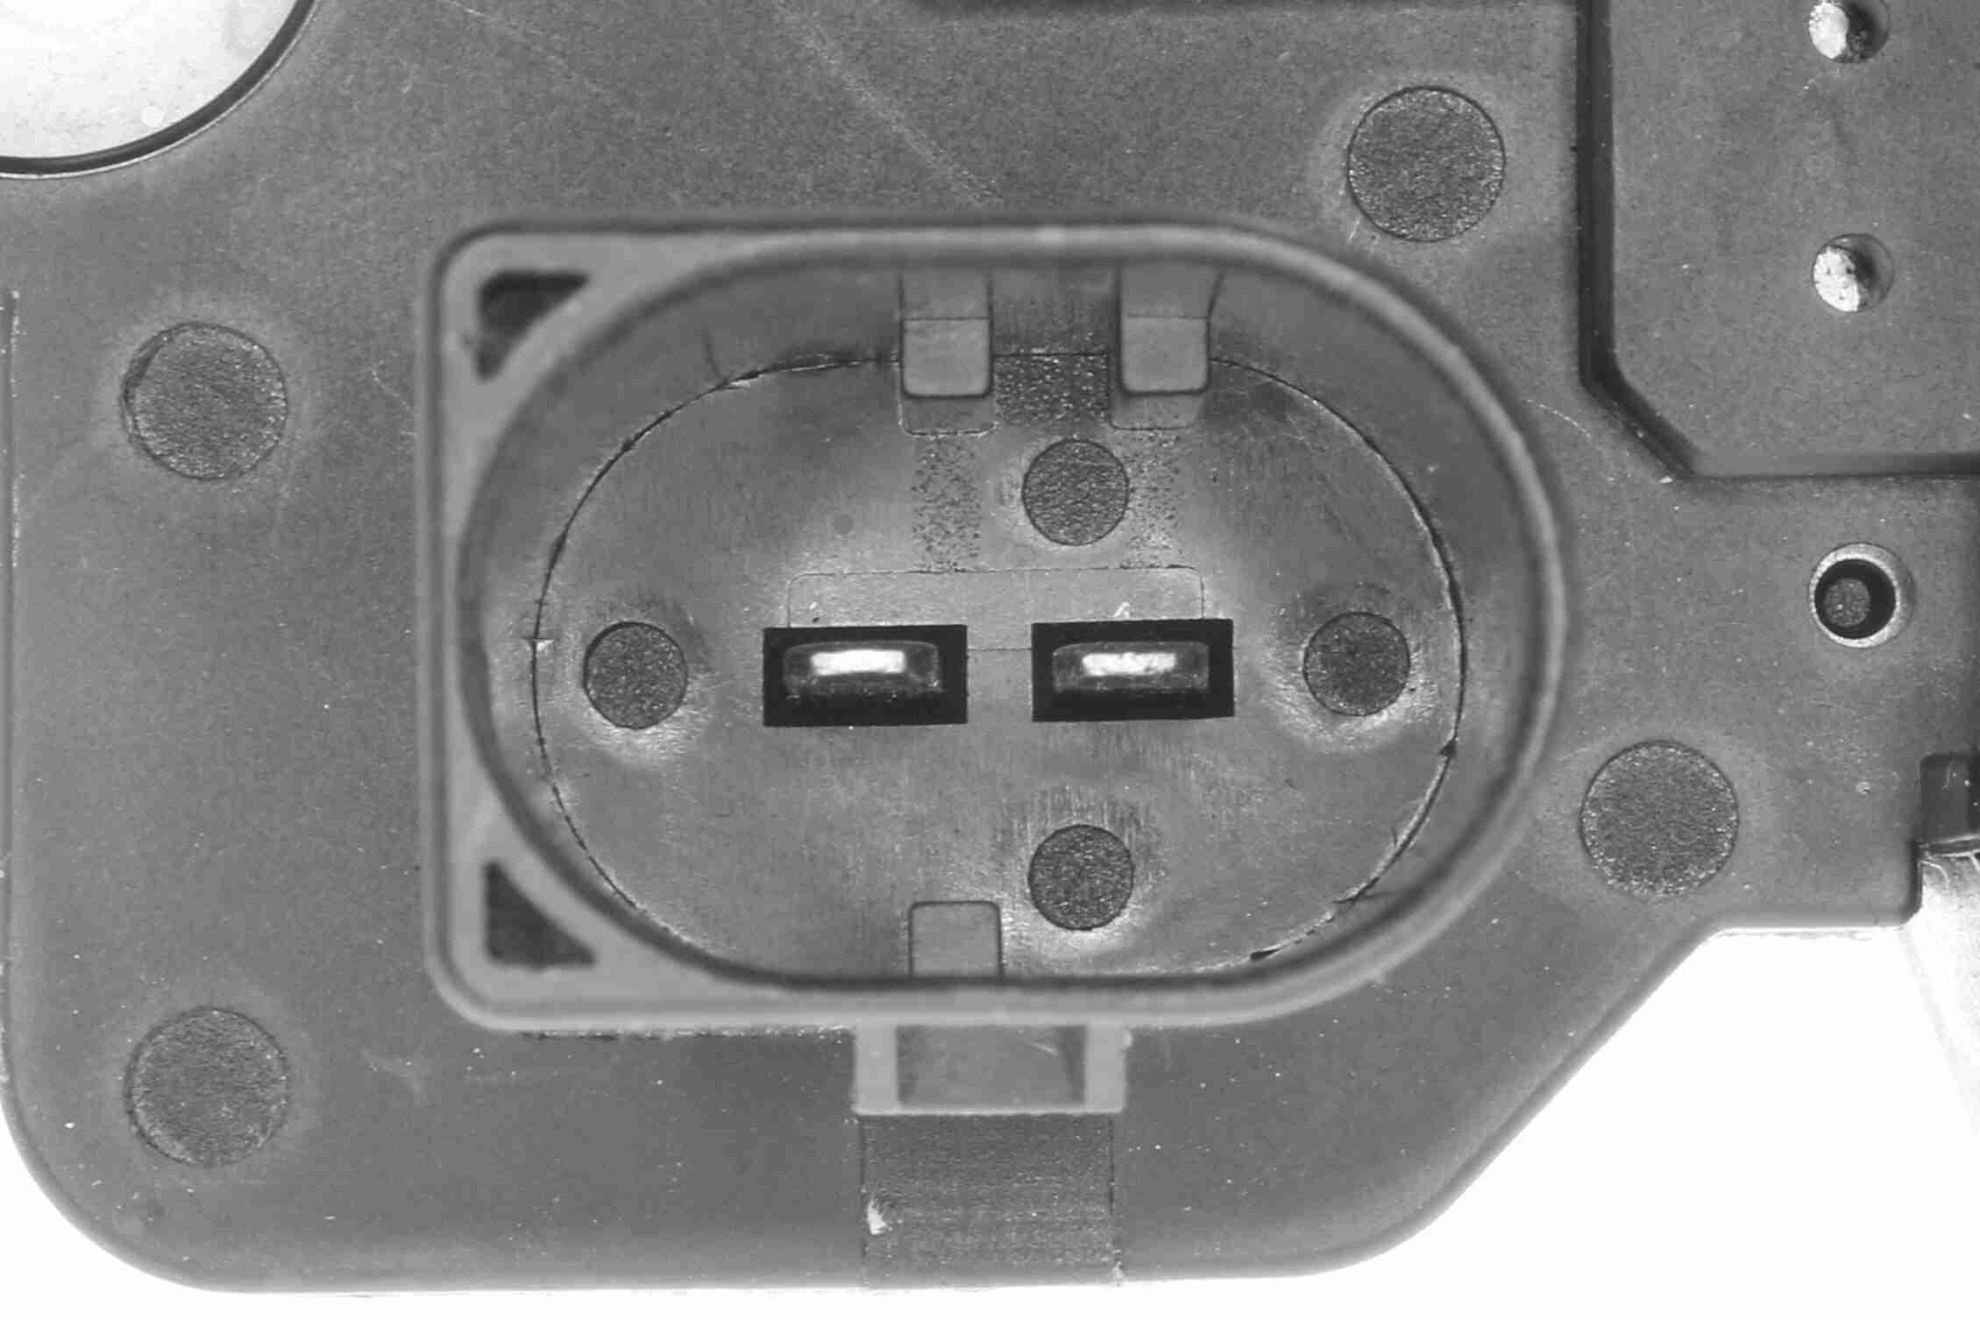 Obrázok Regulačný ventil voľnobehu (Riadenie prívodu vzduchu) VEMO Q+, original equipment manufacturer quality MADE IN GERMANY V10770026